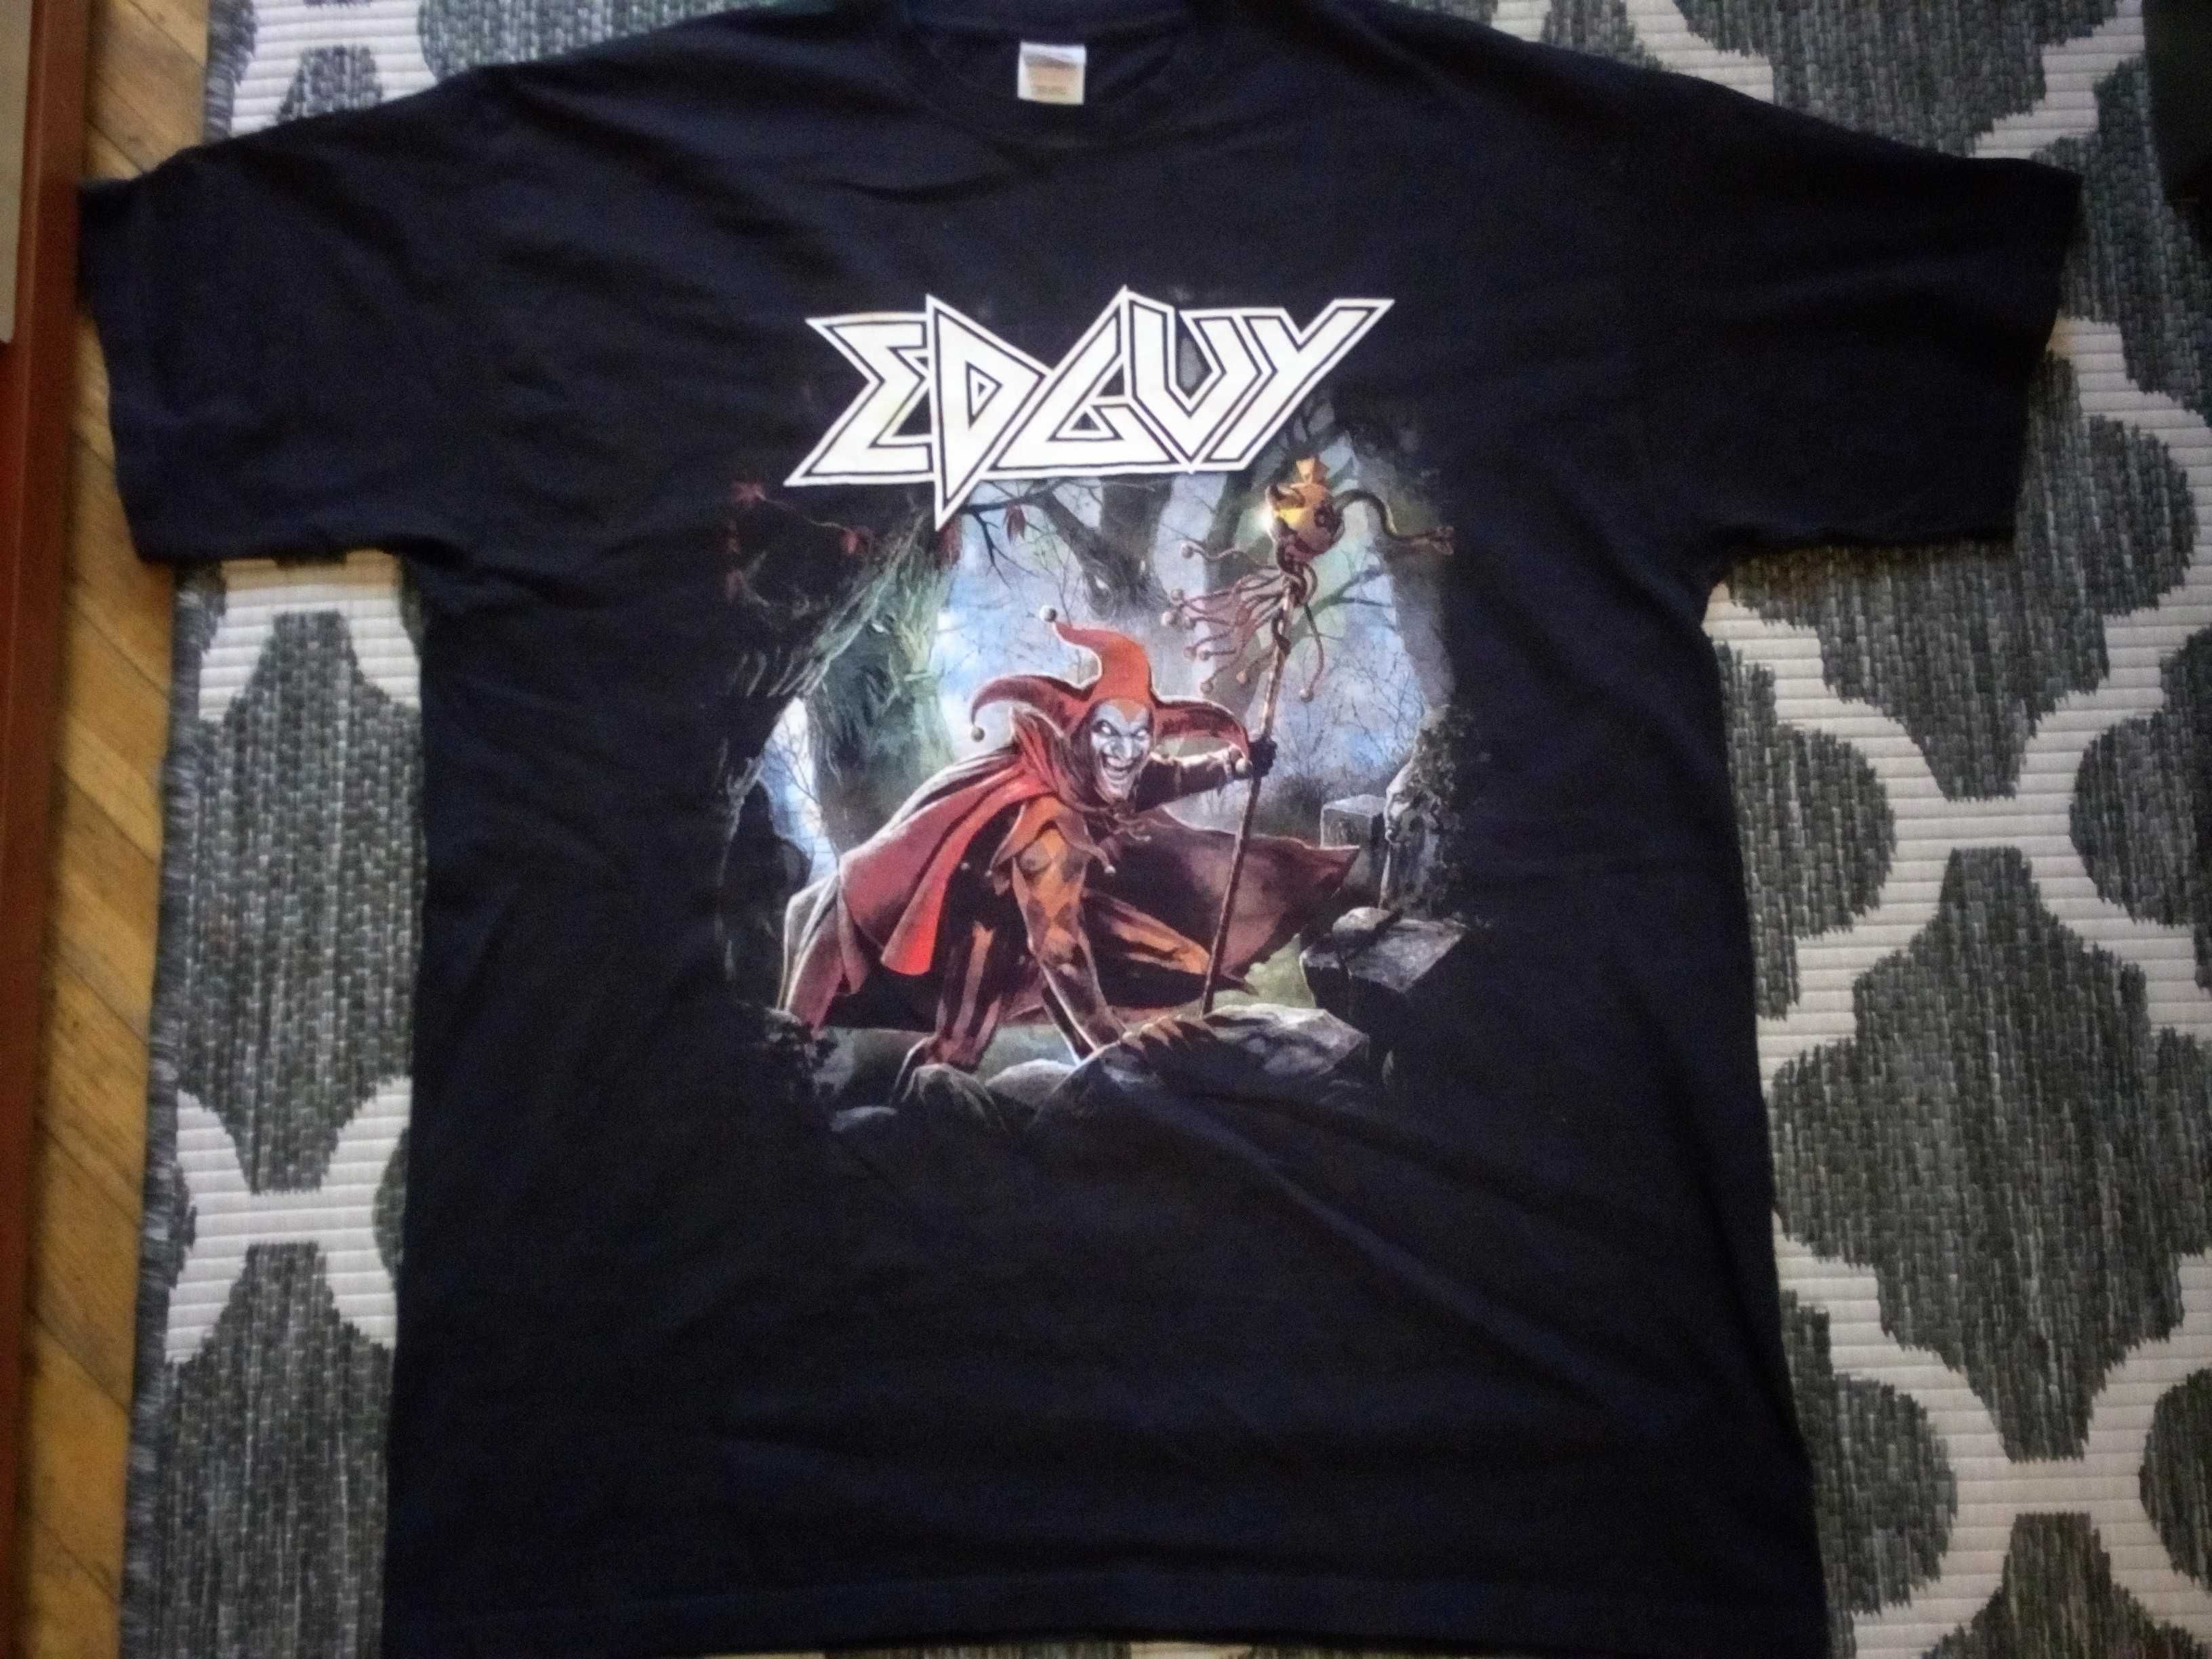 Koszulka muzyczna metal  XL